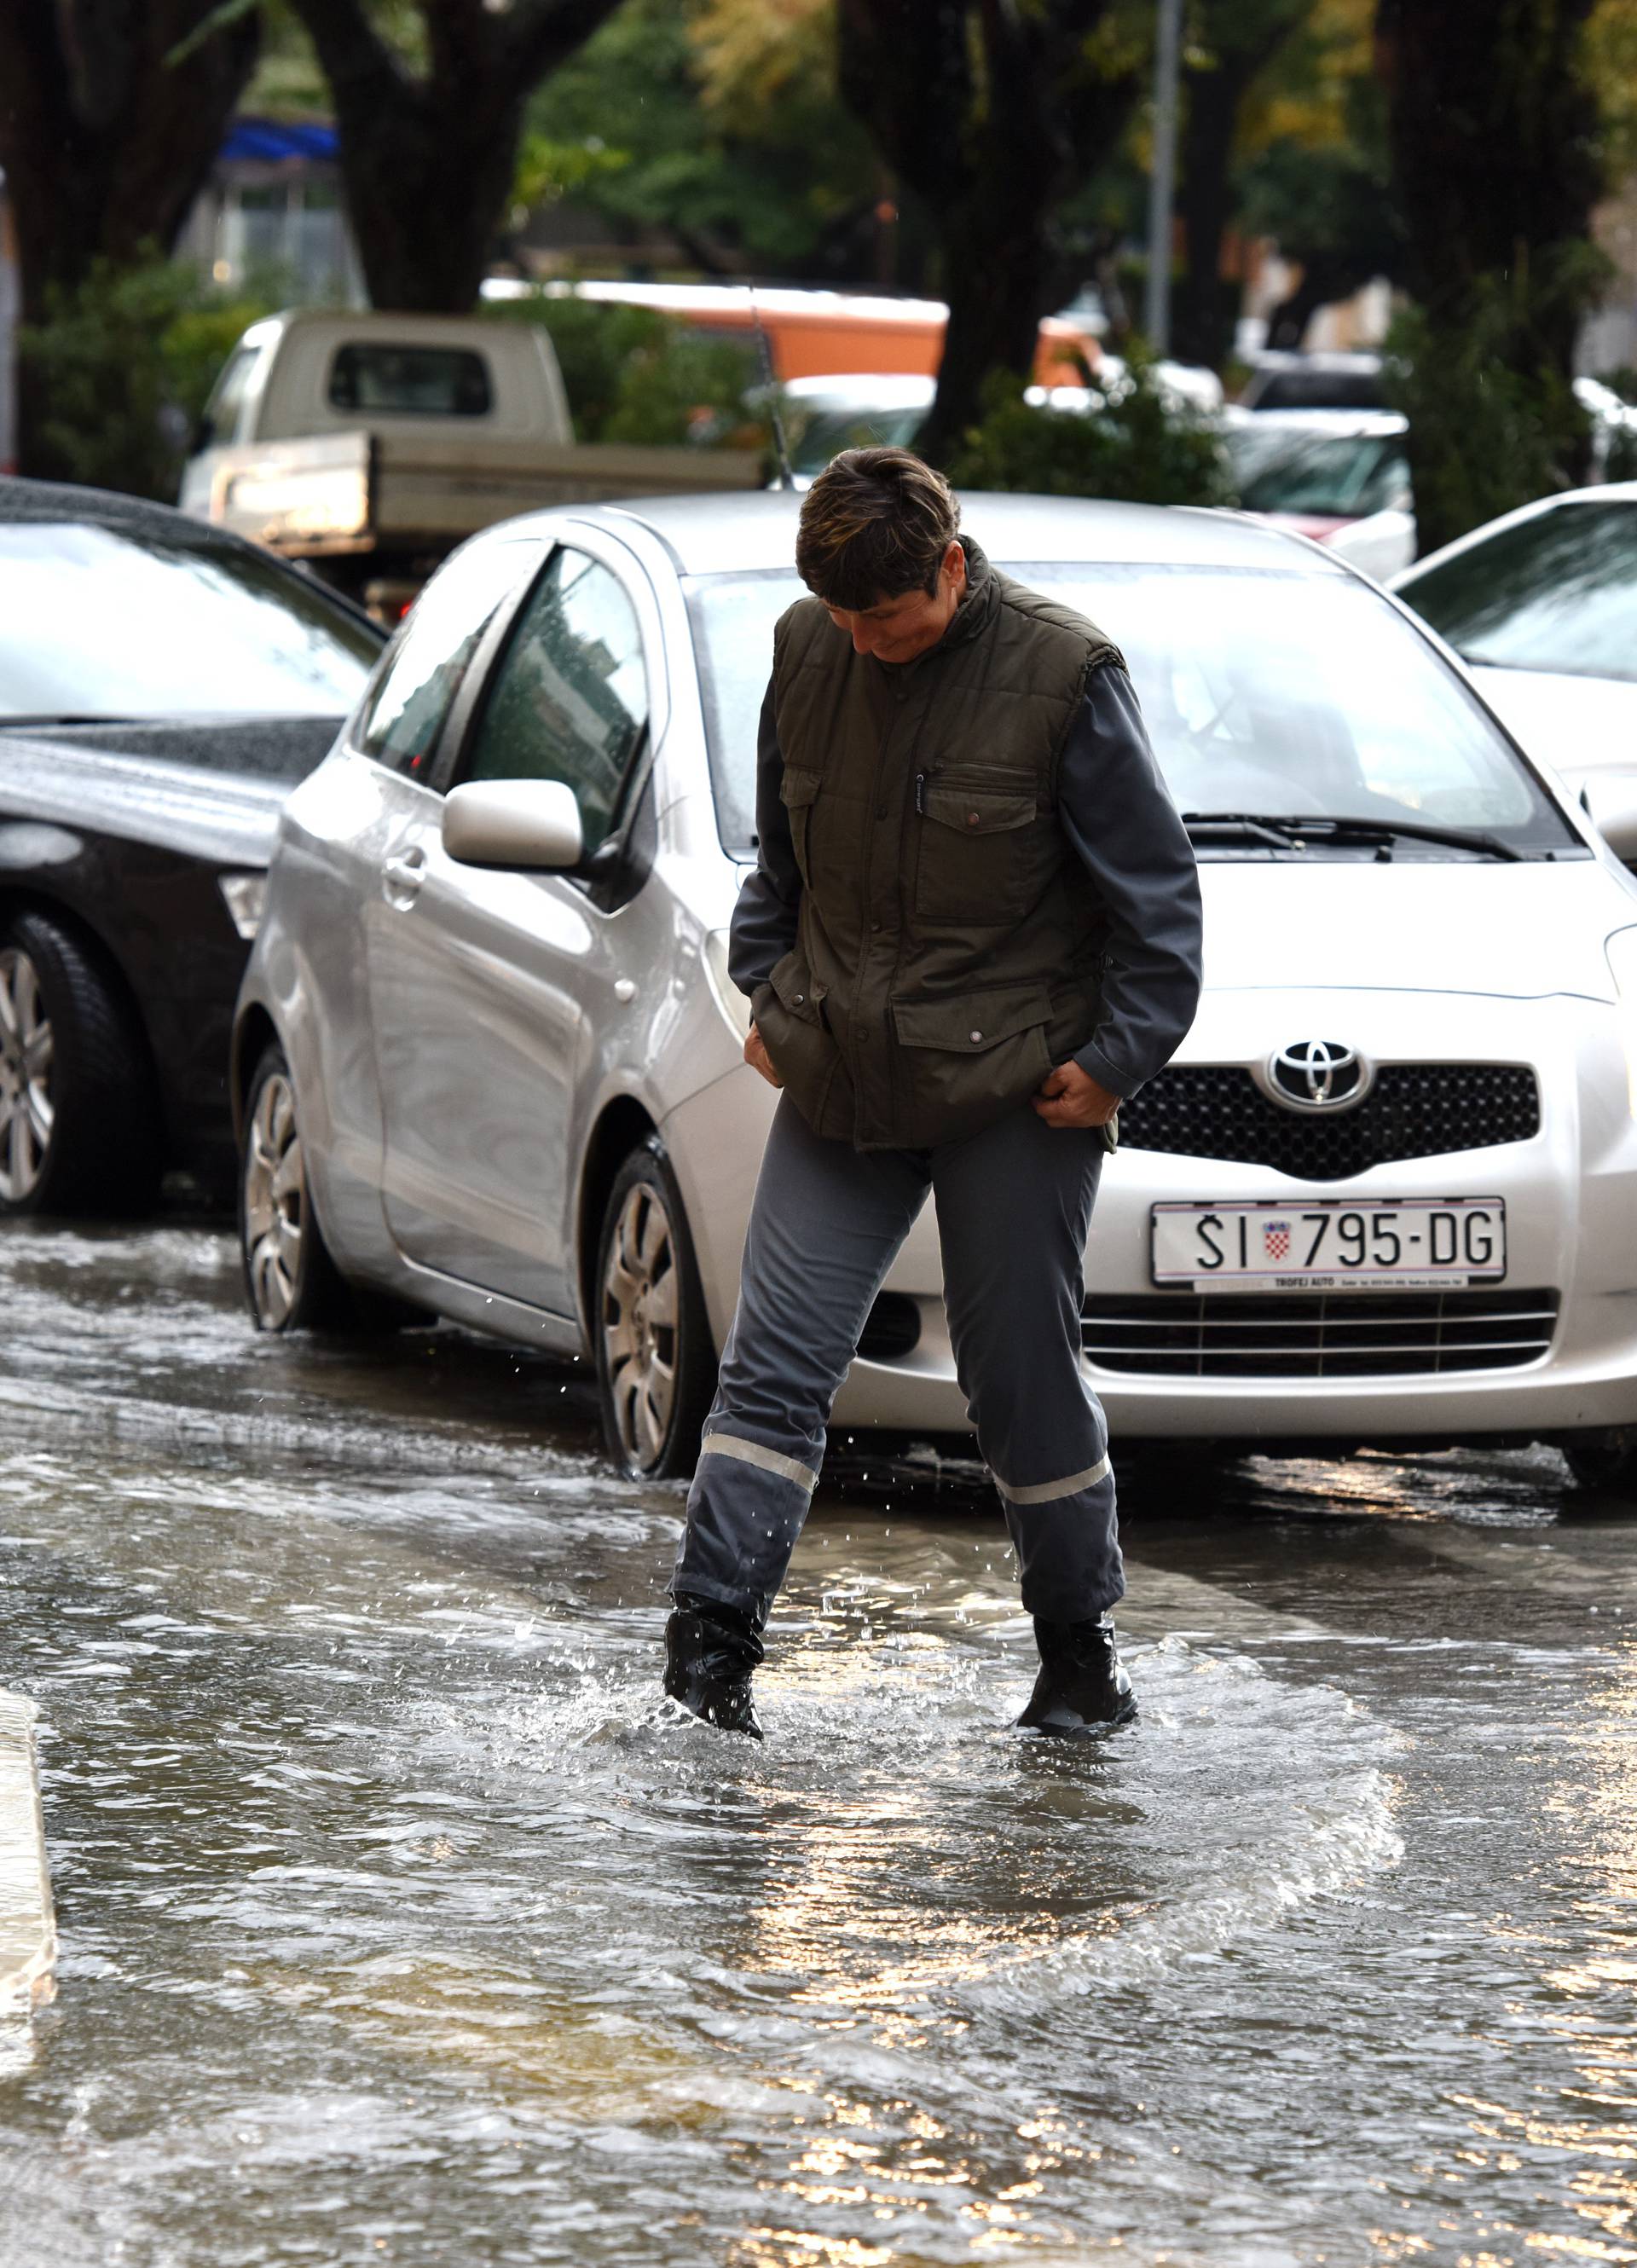 Kiša neumorno pada u Rijeci:  Izbili šahtovi, ulice pod vodom